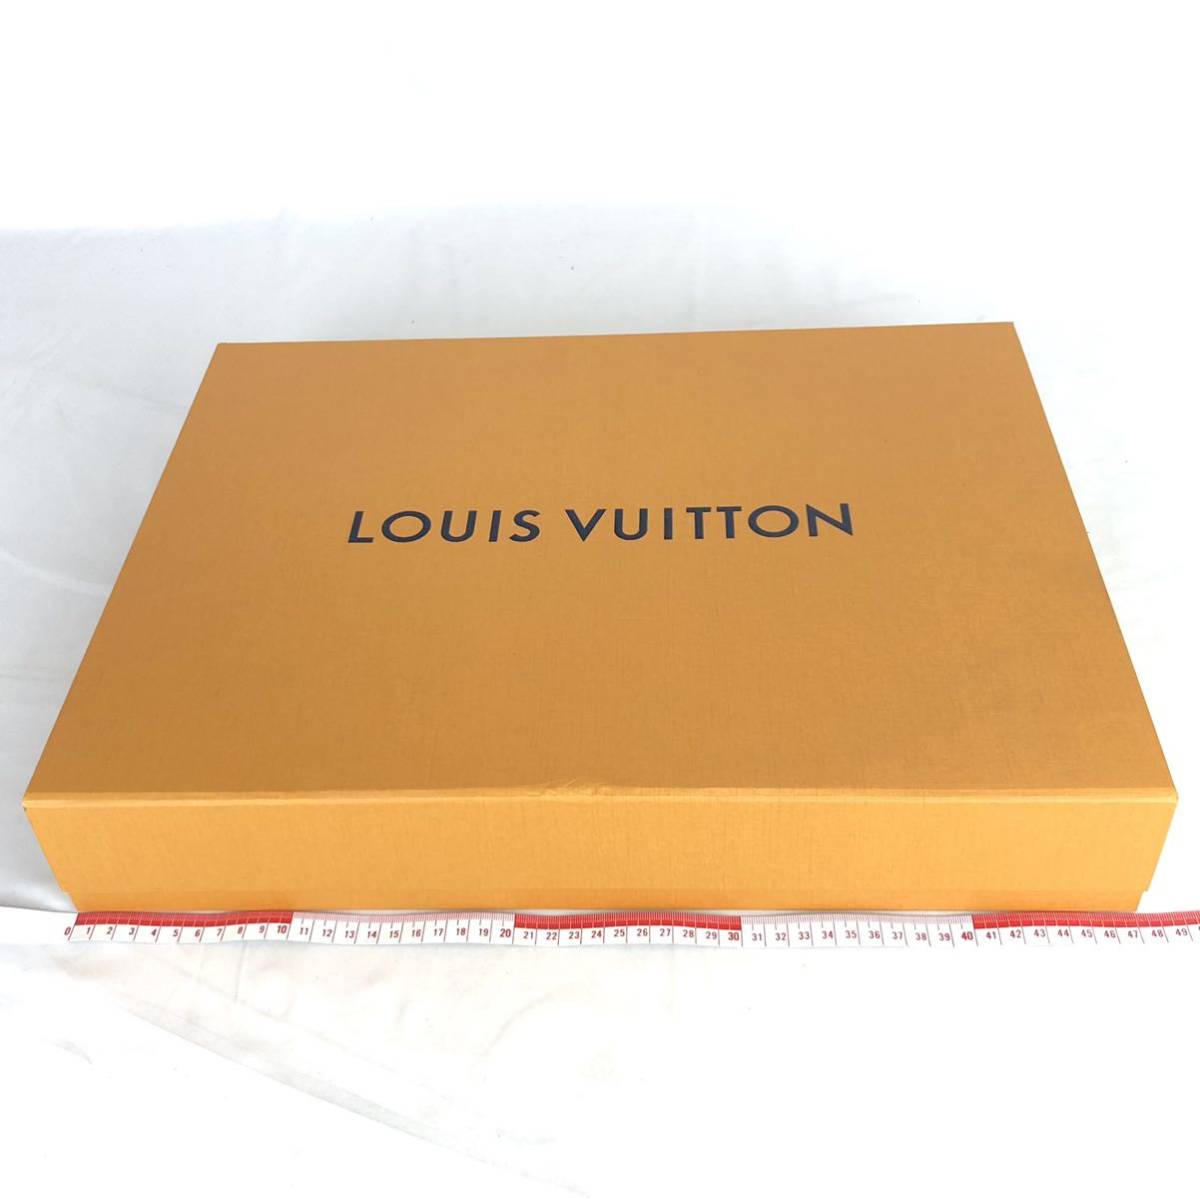 LOUIS VUITTON ルイヴィトン 空箱 まとめ 4箱 大型 収納ケース オレンジBOX 空き箱 箱_画像7